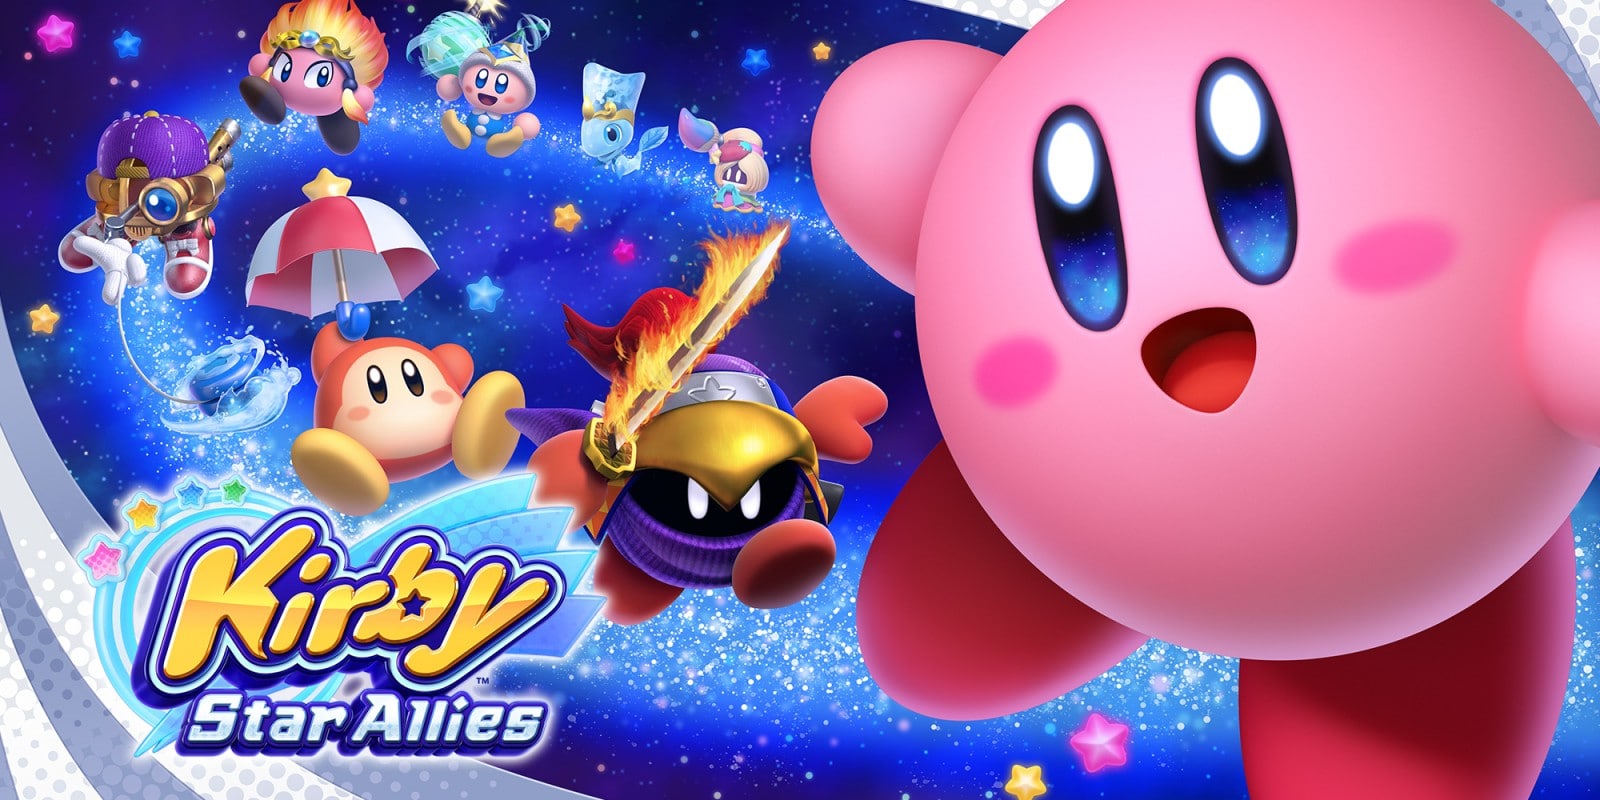 Kirby vs Meta Knight in Star Allies